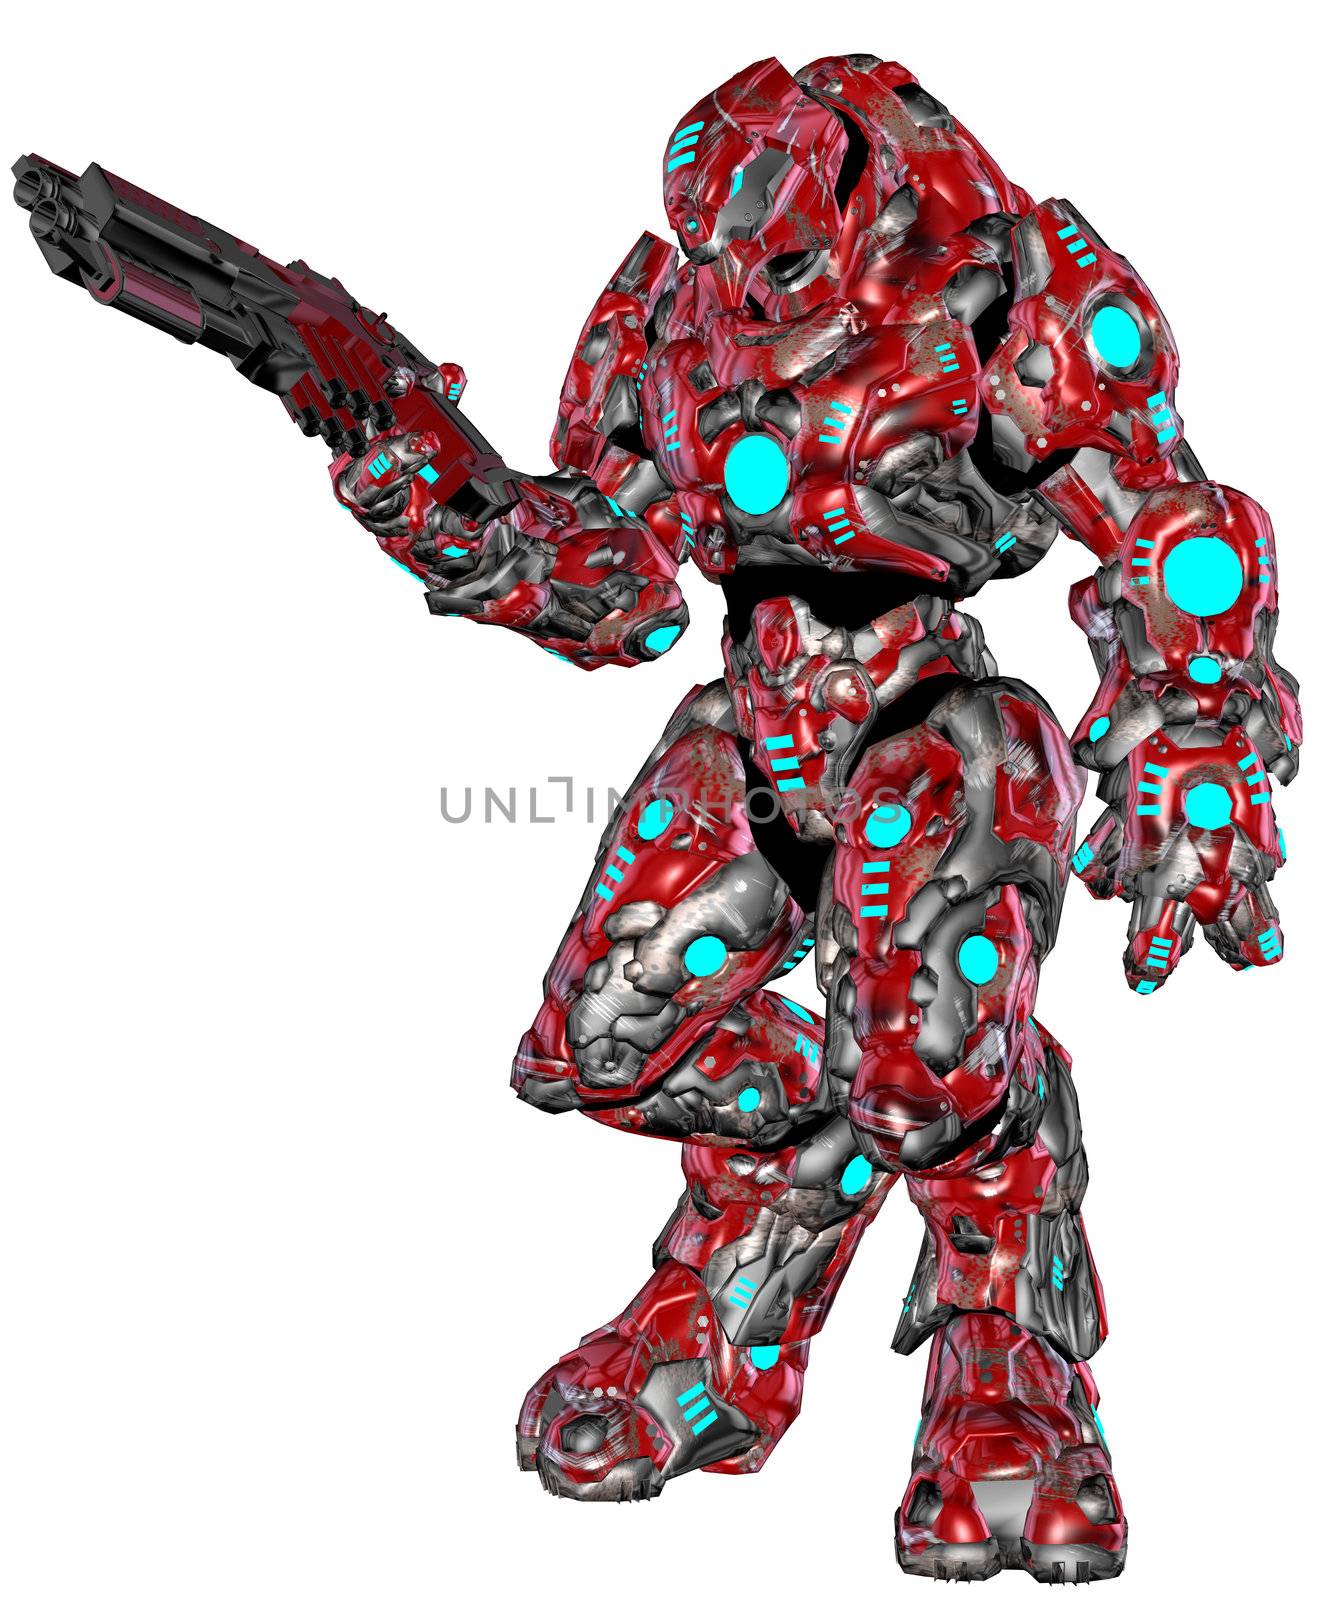 Scifi alien robot by Wampa